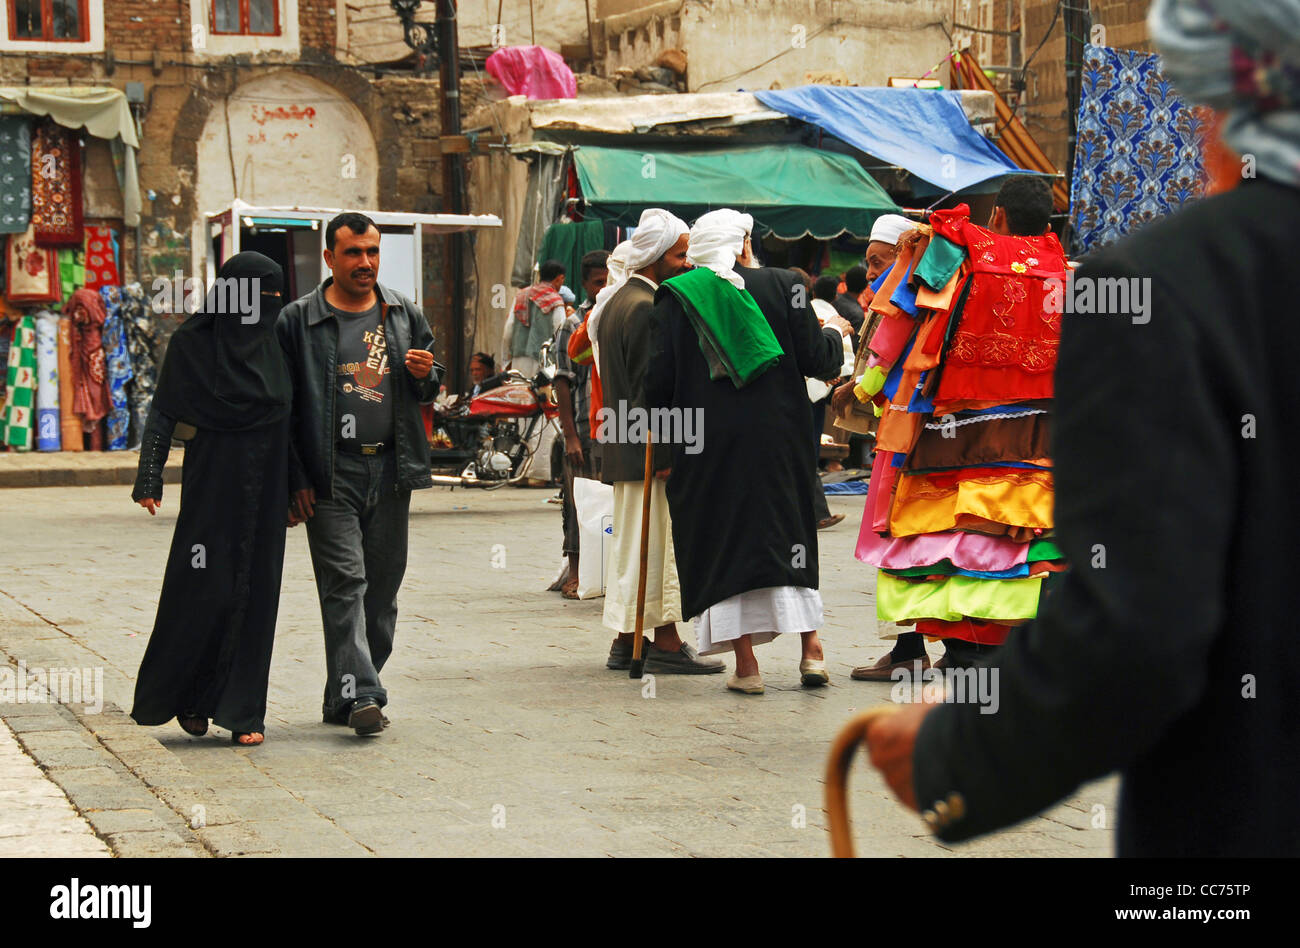 Yemen, Sanaa, view of people walking on street in market Stock Photo